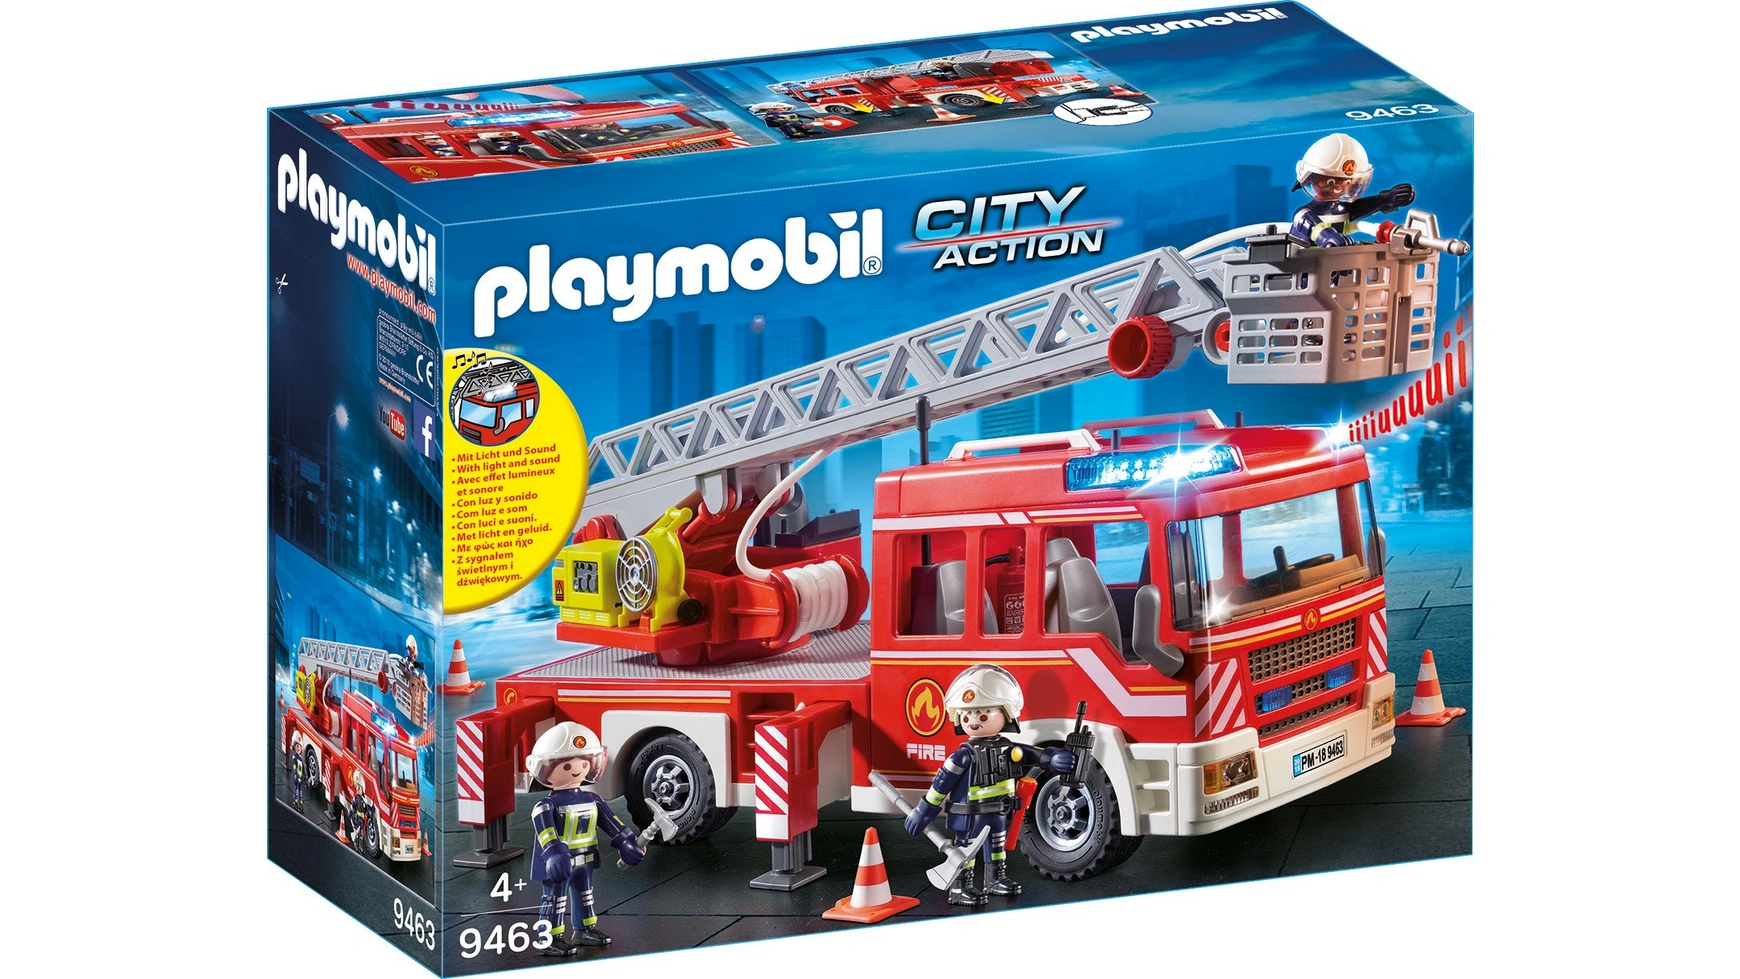 City action пожарная машина-лестница Playmobil конструктор playmobil city action 9463 пожарная машина с лестницей 89 дет